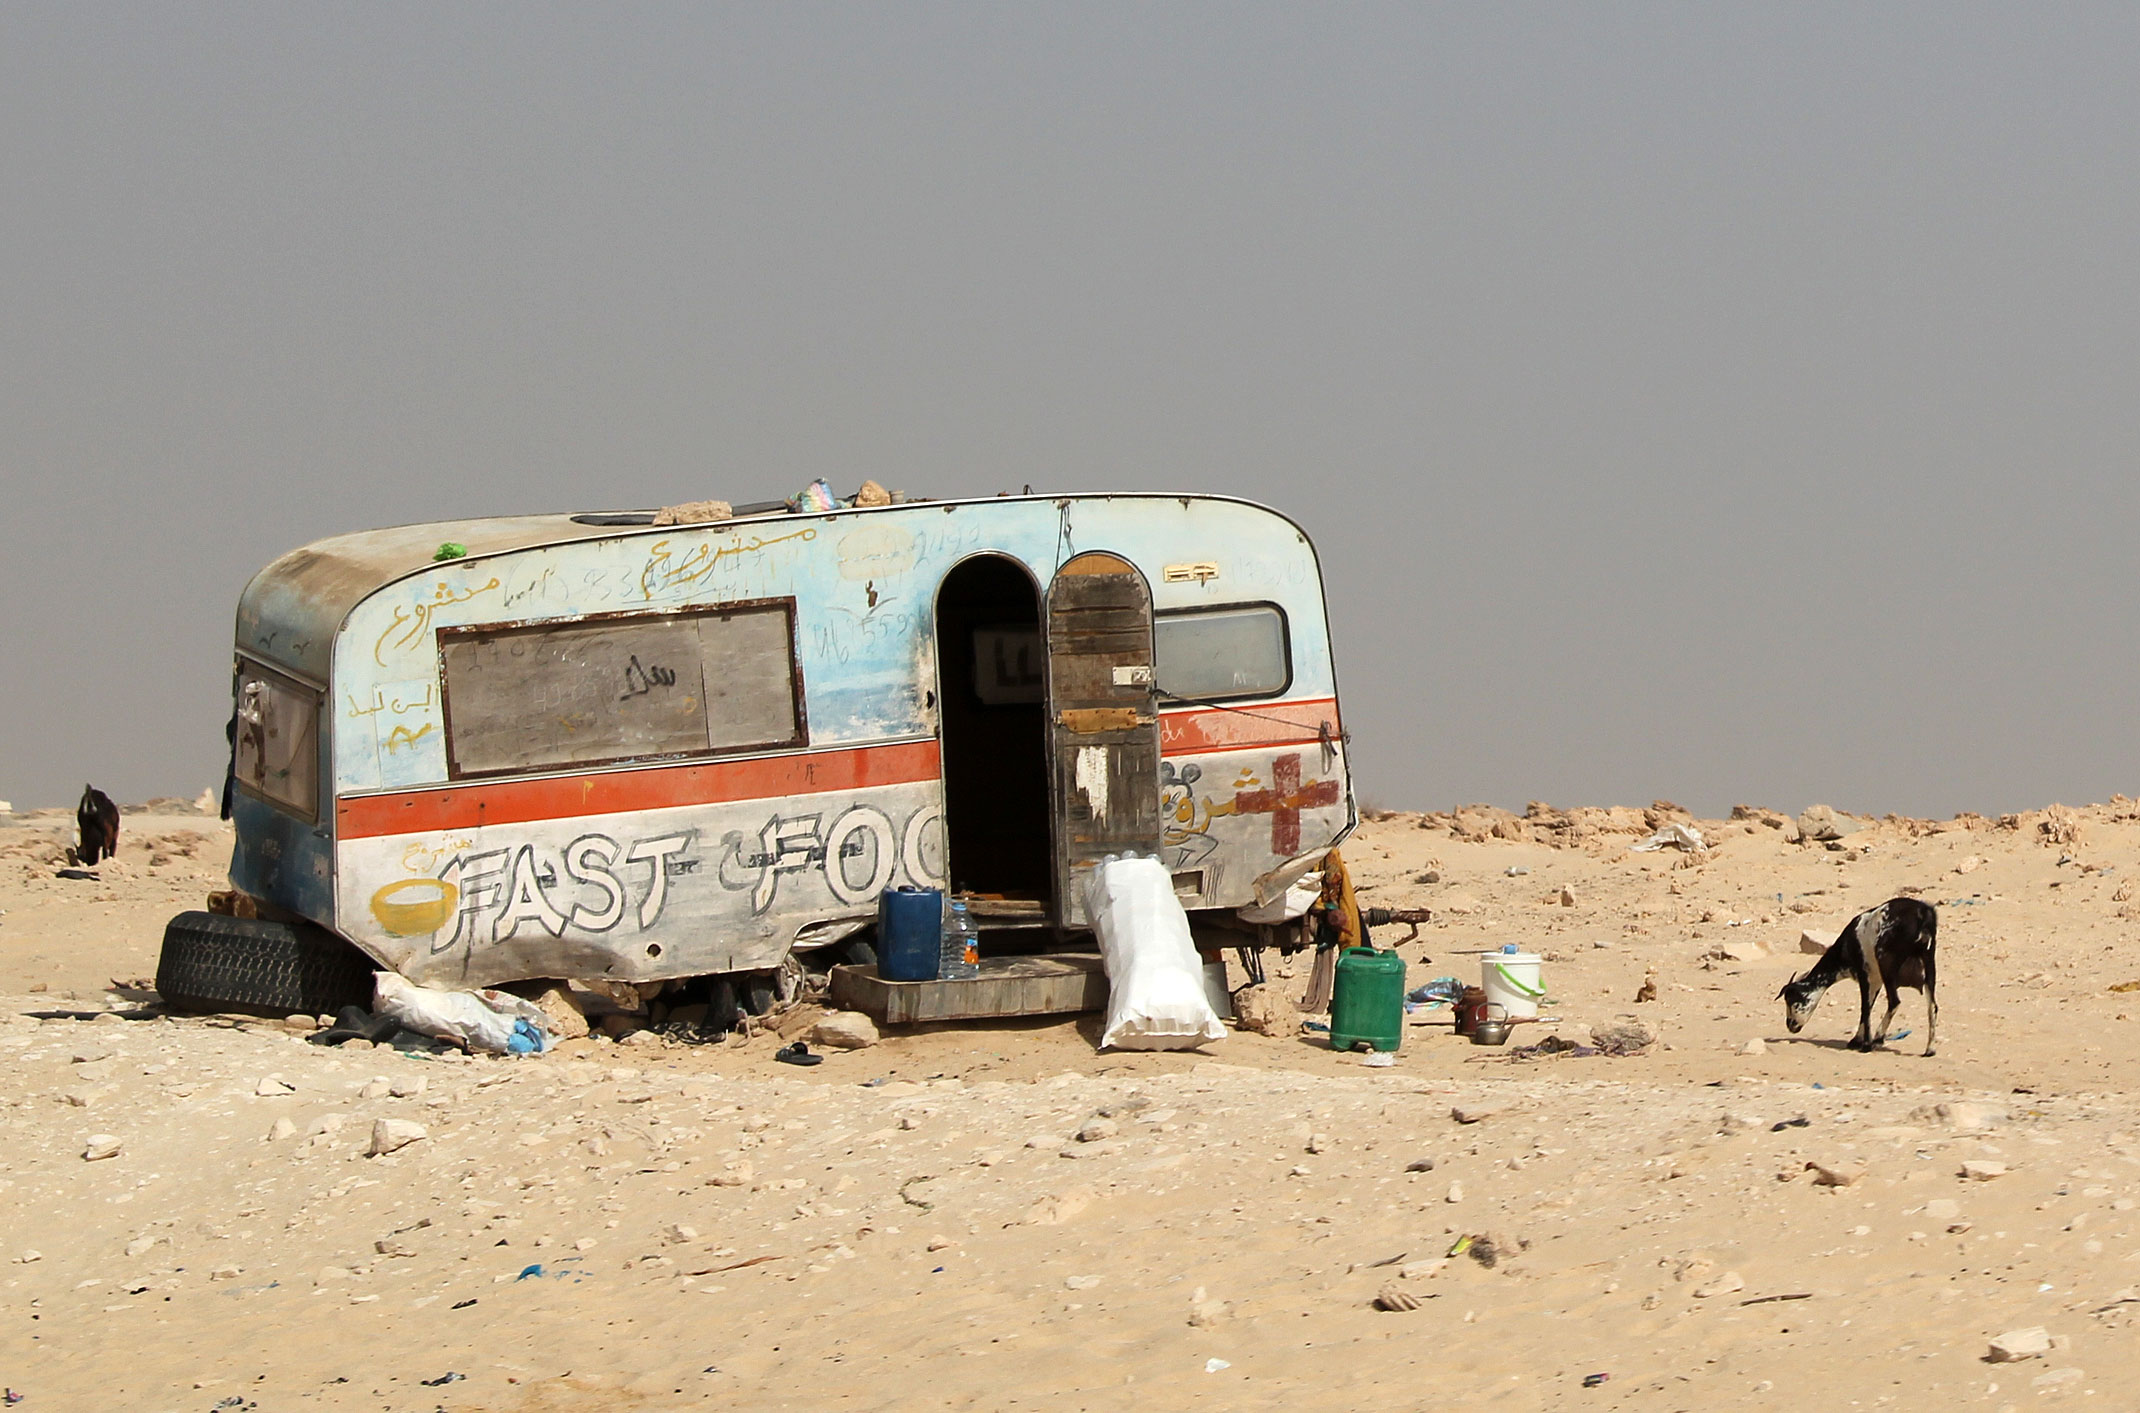 Fast Food w Mauretanii